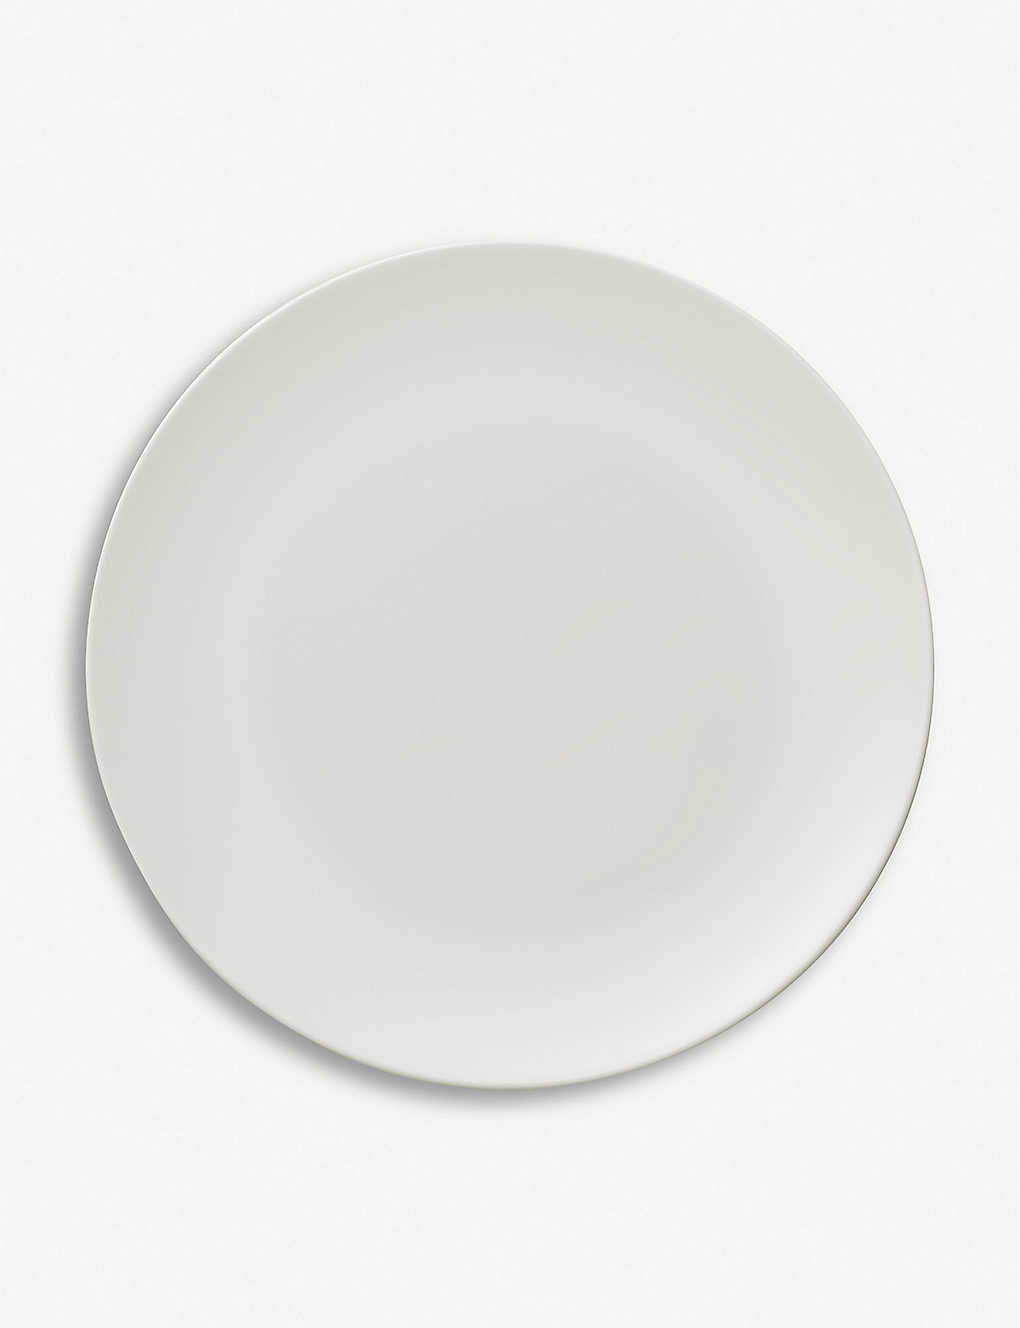 VILLEROY & BOCH メトロシック ブランク デザート/ブレークファスト プレート Metrochic Blanc dessert/breakfast plate #WHITE